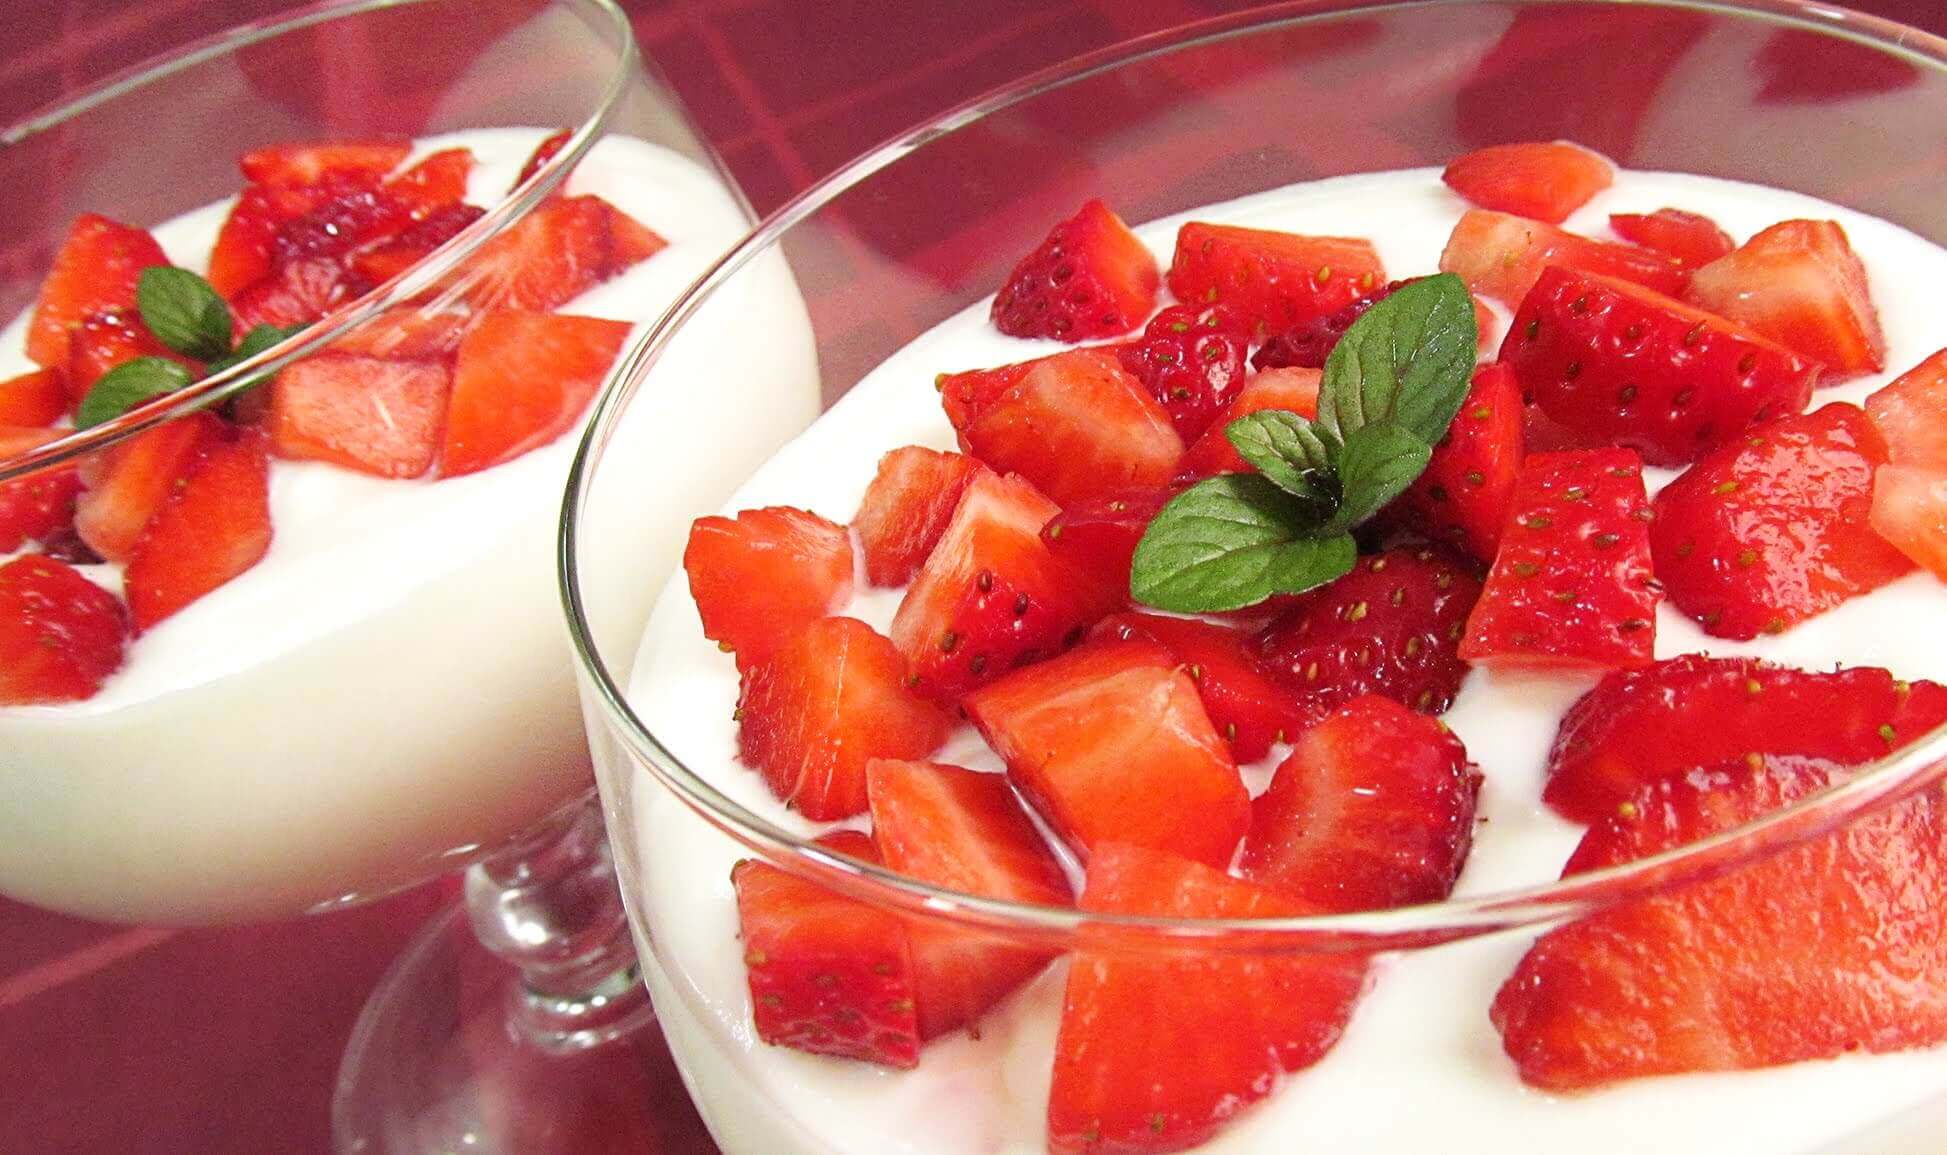 plain yogurt and strawberries